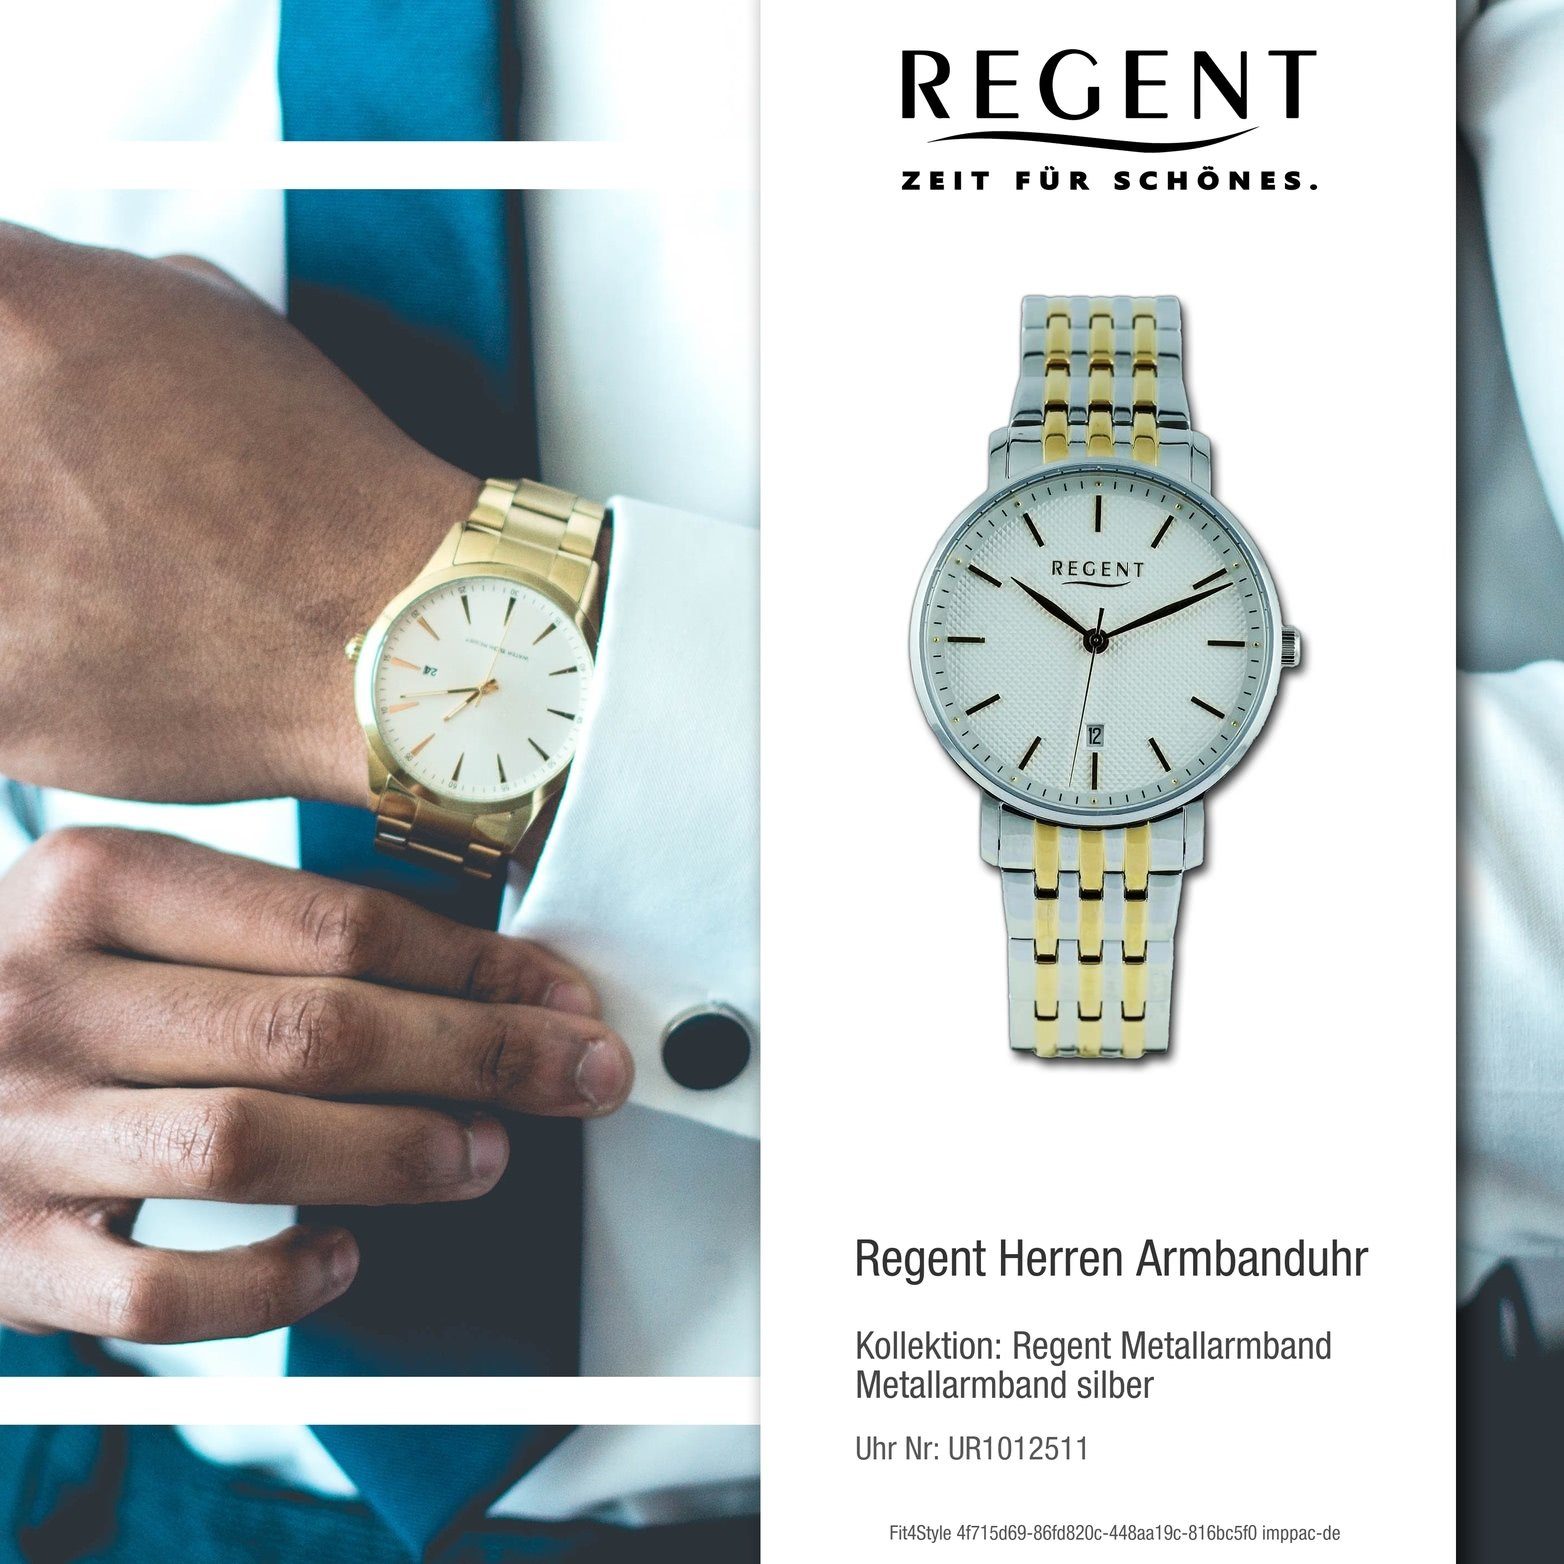 Regent Quarzuhr 39mm) silber, Herren Herrenuhr Analog, rundes Gehäuse, Metallarmband Regent (ca. Armbanduhr gold, groß